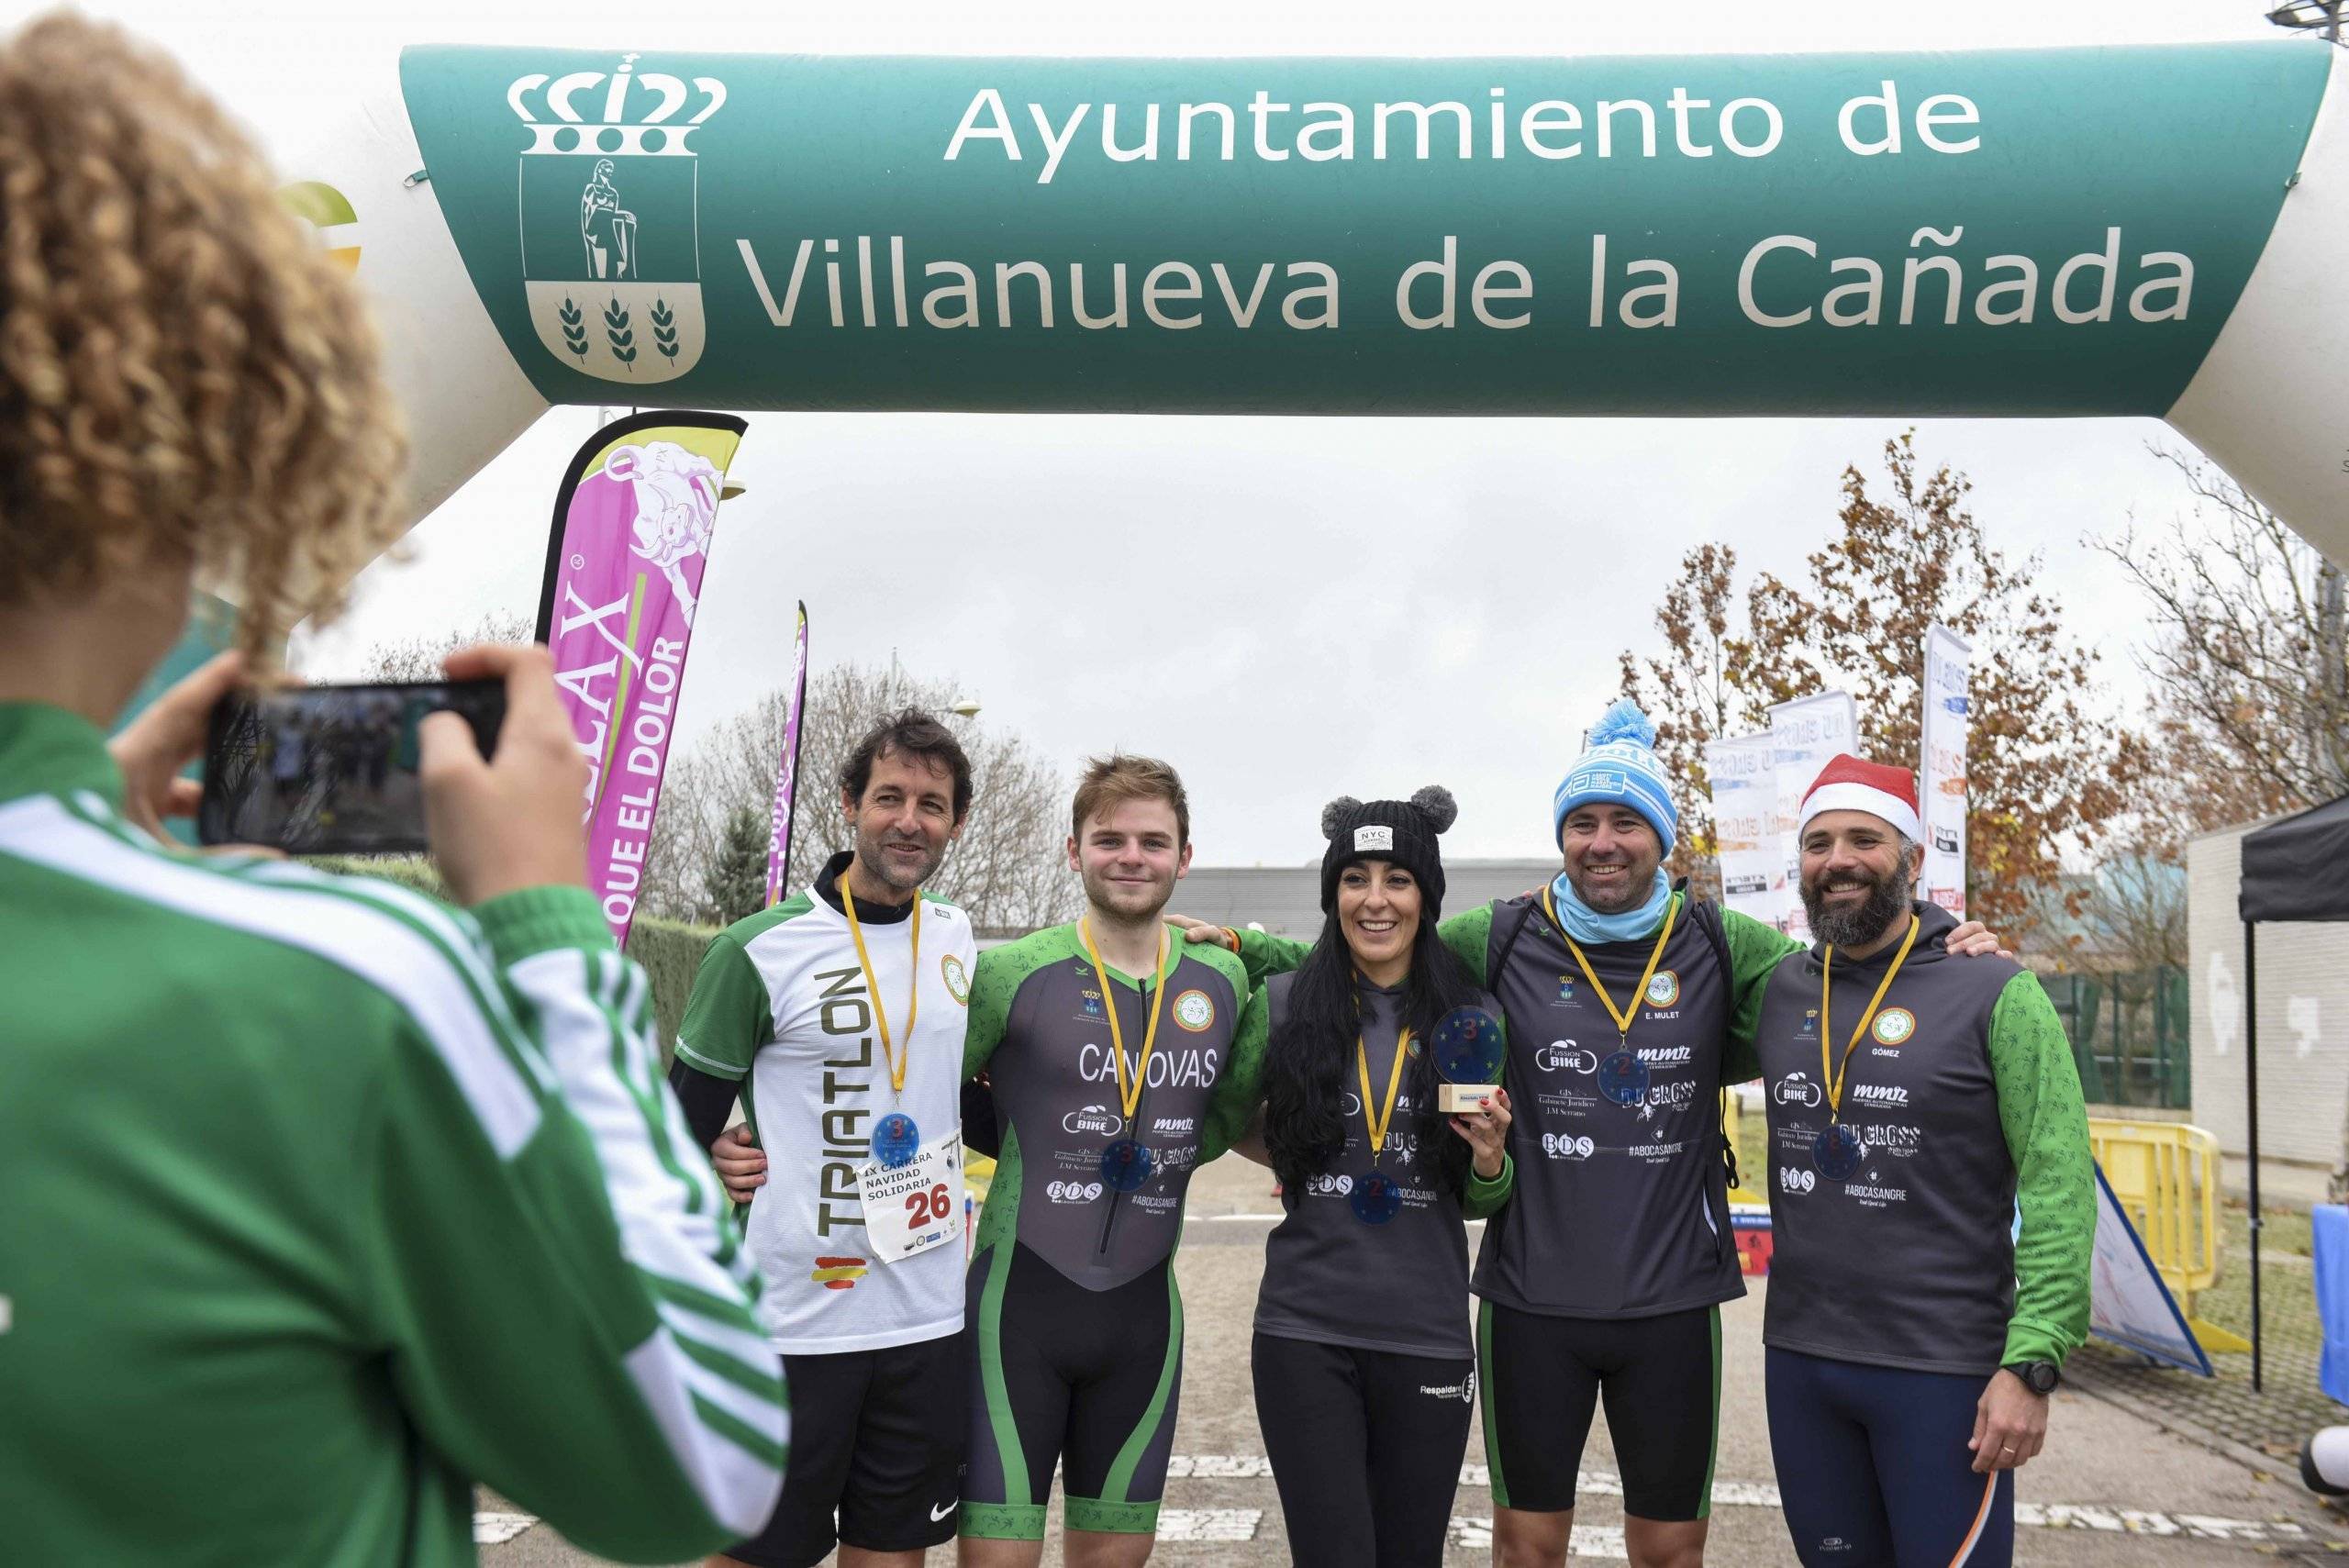 Miembros del Club de Triatlón de Villanueva de la Cañada en la línea de meta.